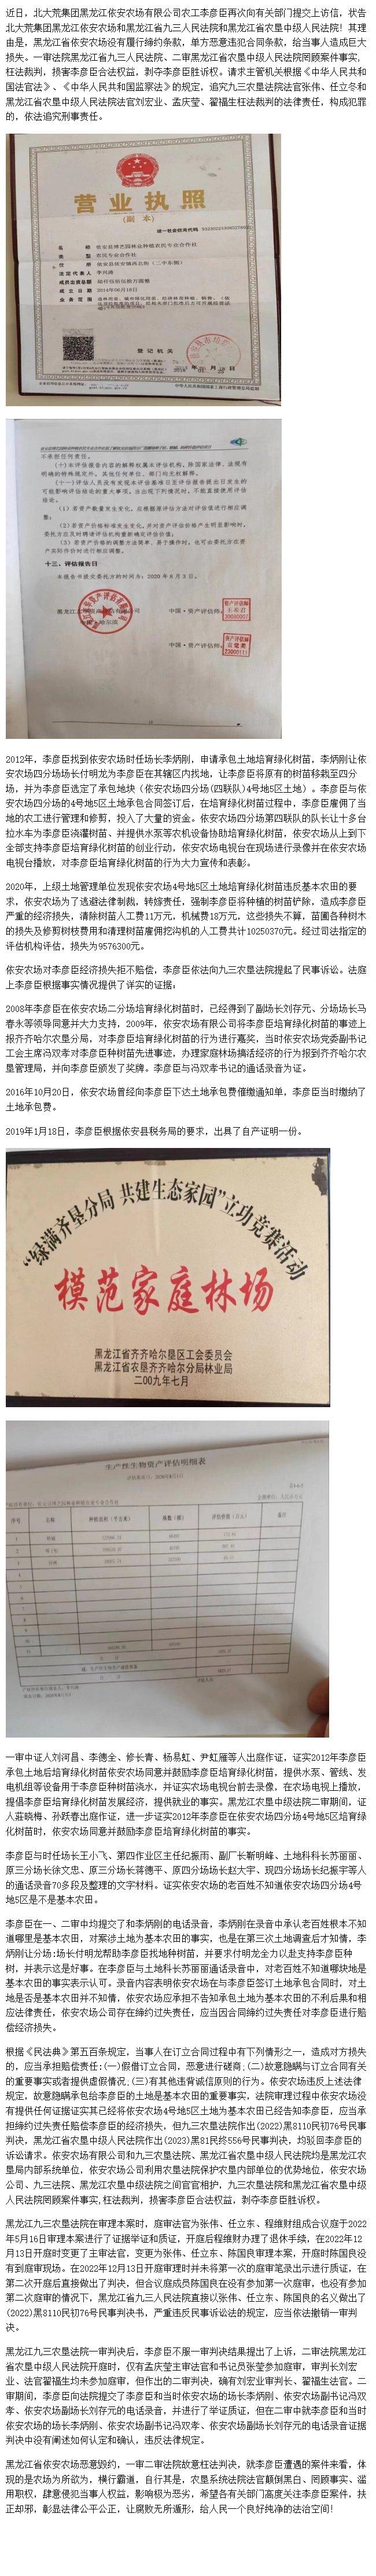 黑龙江省依安农场恶意毁约 九三农垦法院枉法判决